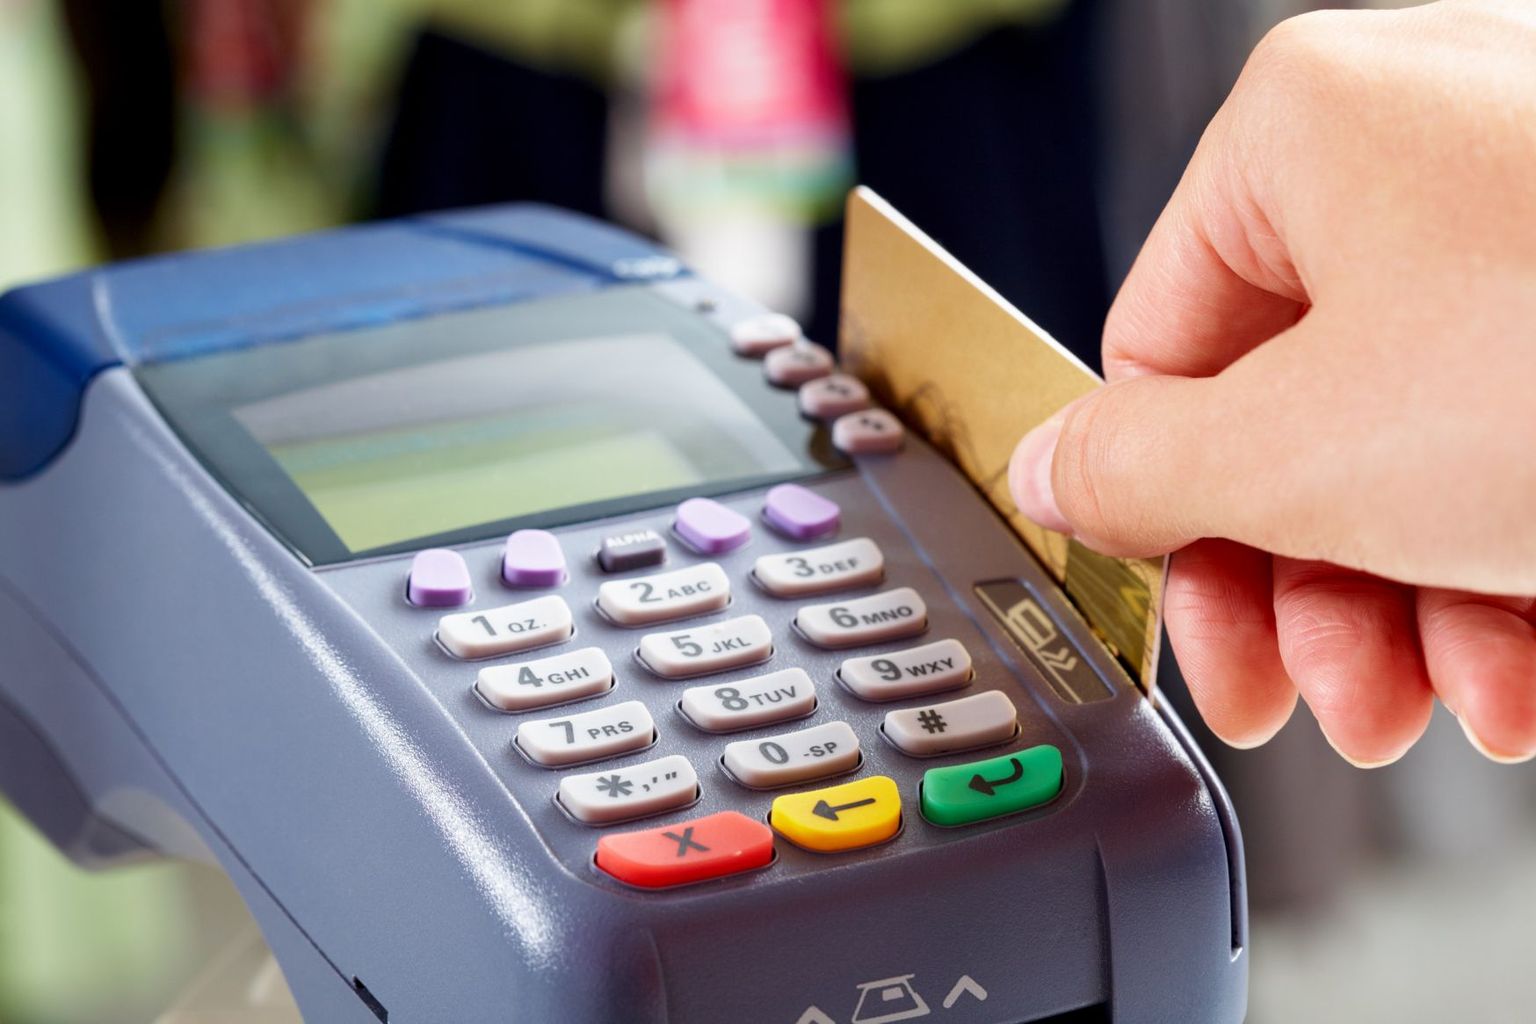 Ameerika Ühendriikides hakatakse tarbijate krediitkaardiinfo põhjal haigusi ennetama.